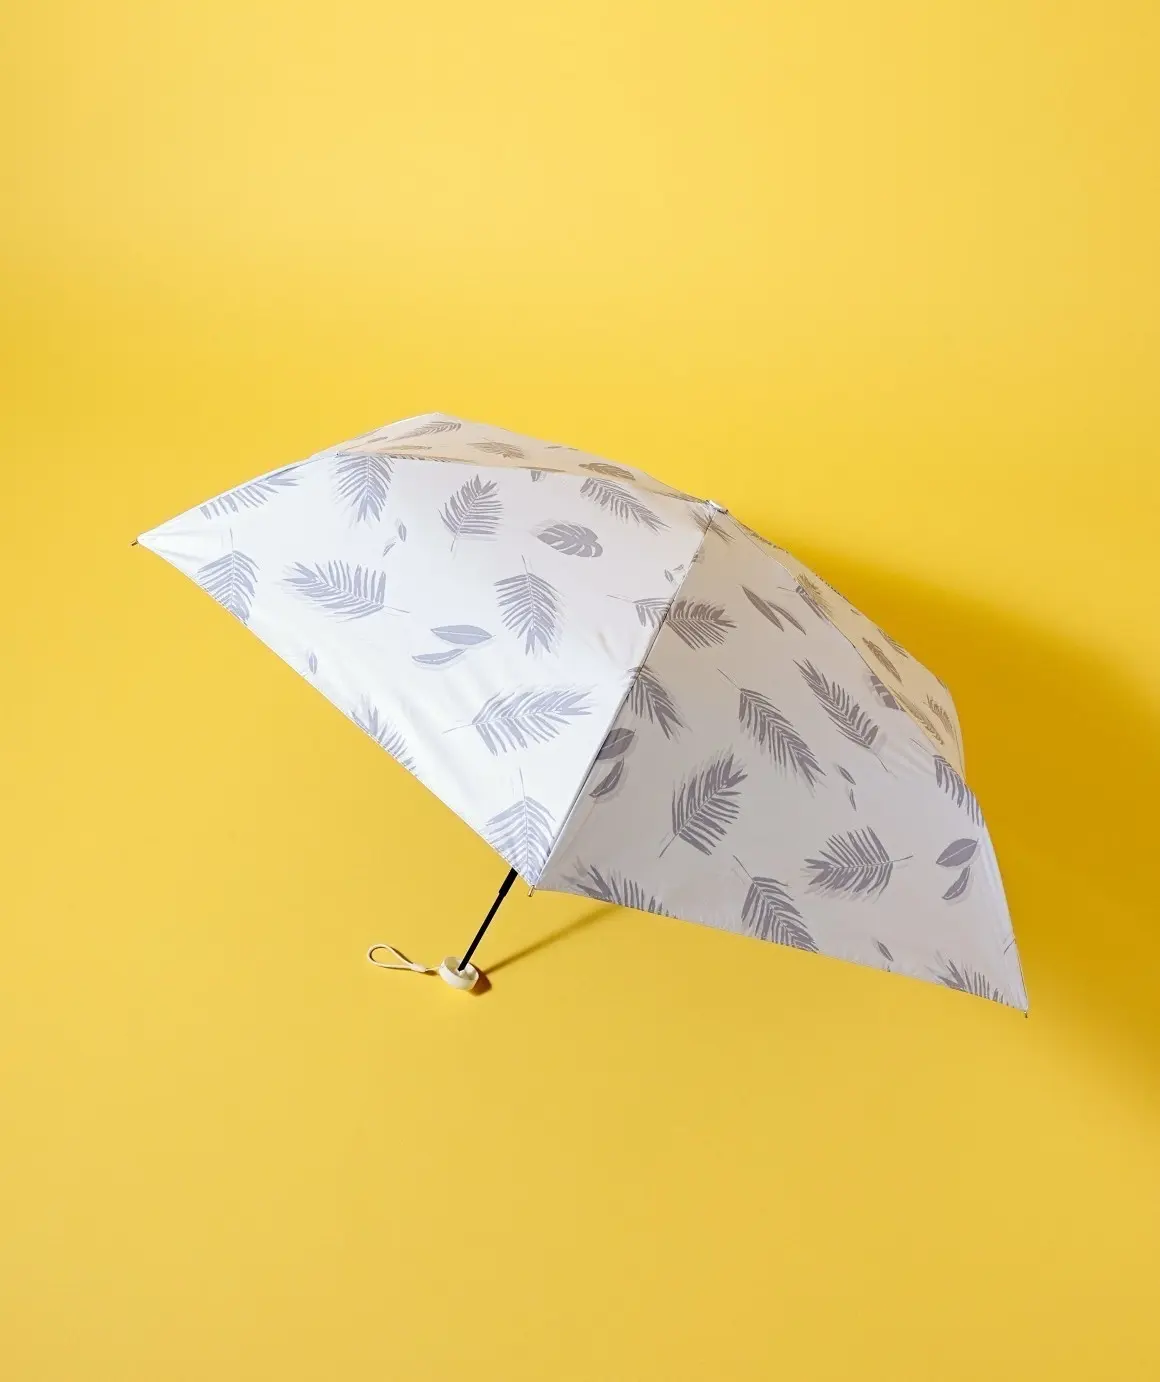 ボタニカル柄の傘